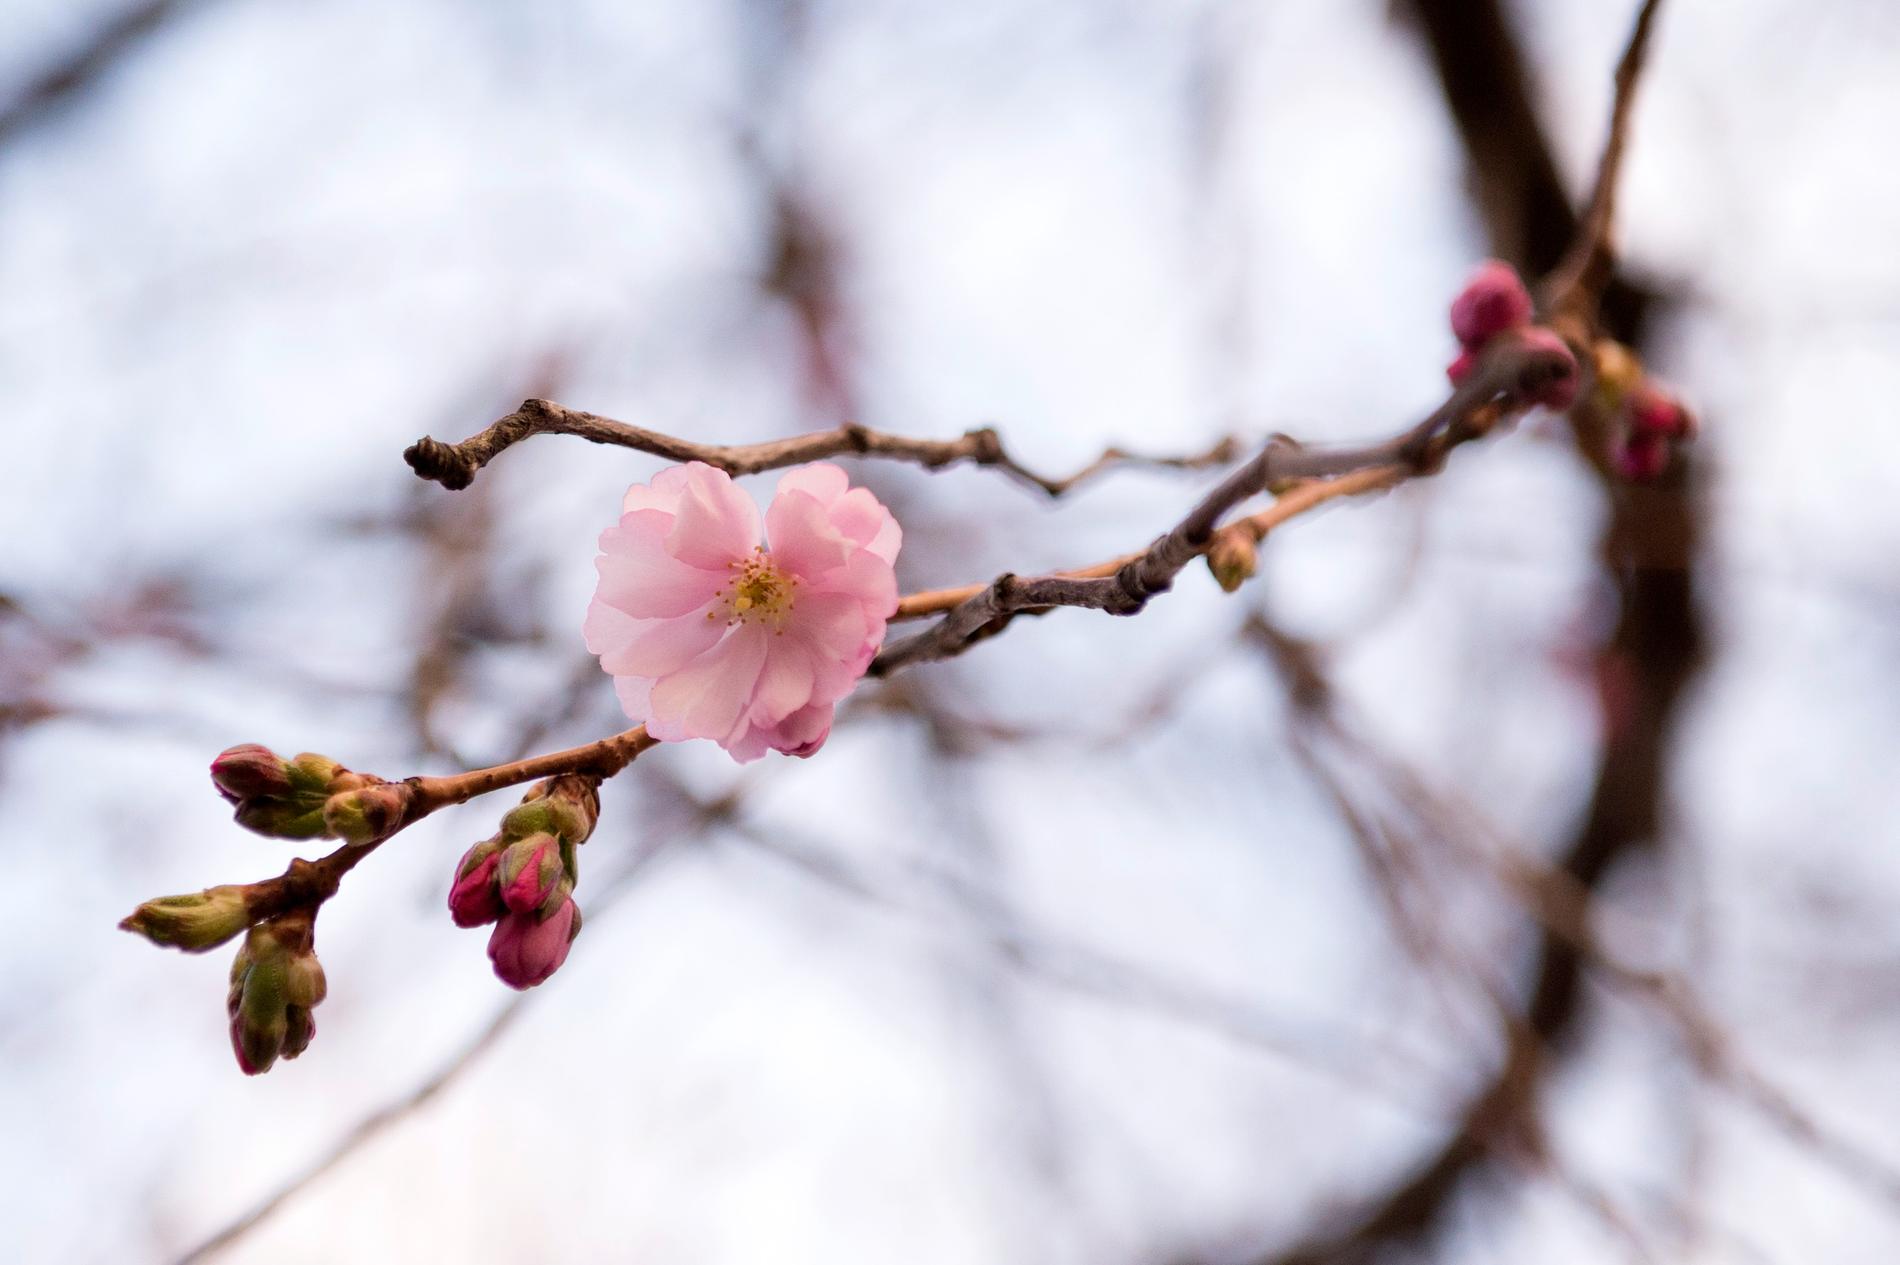 Körsbärsträden i Kungsträdgården i centrala Stockholm tror att det är vår. De brukar blomma i april. Arkivbild.